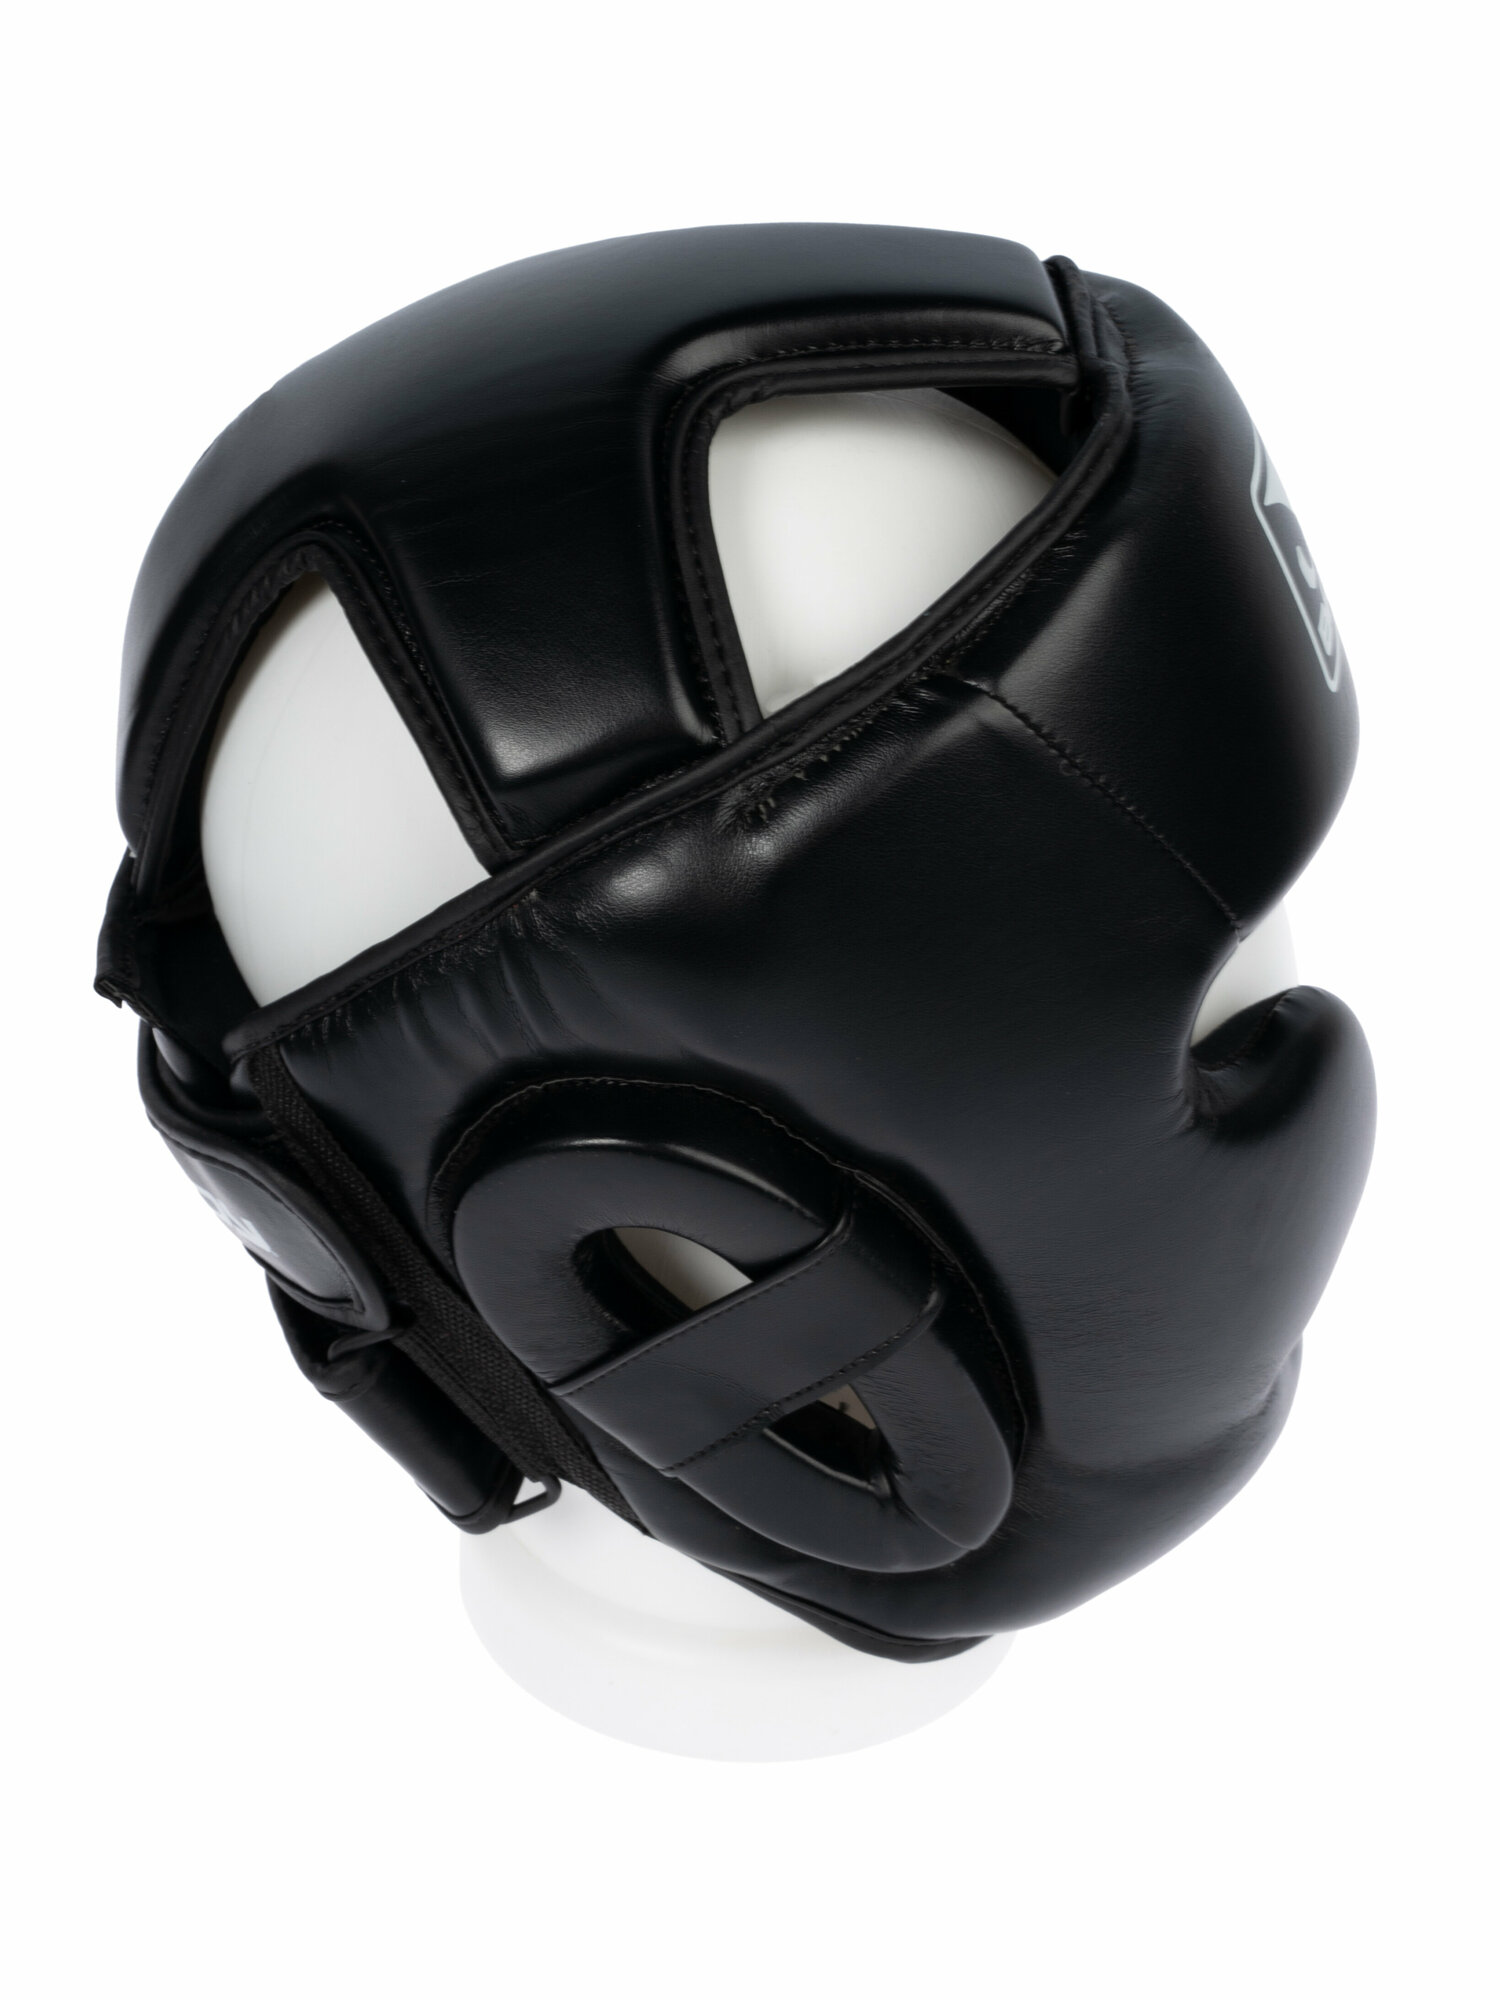 Боксерский шлем "Тренировочный" из искусственной кожи Размер S/M